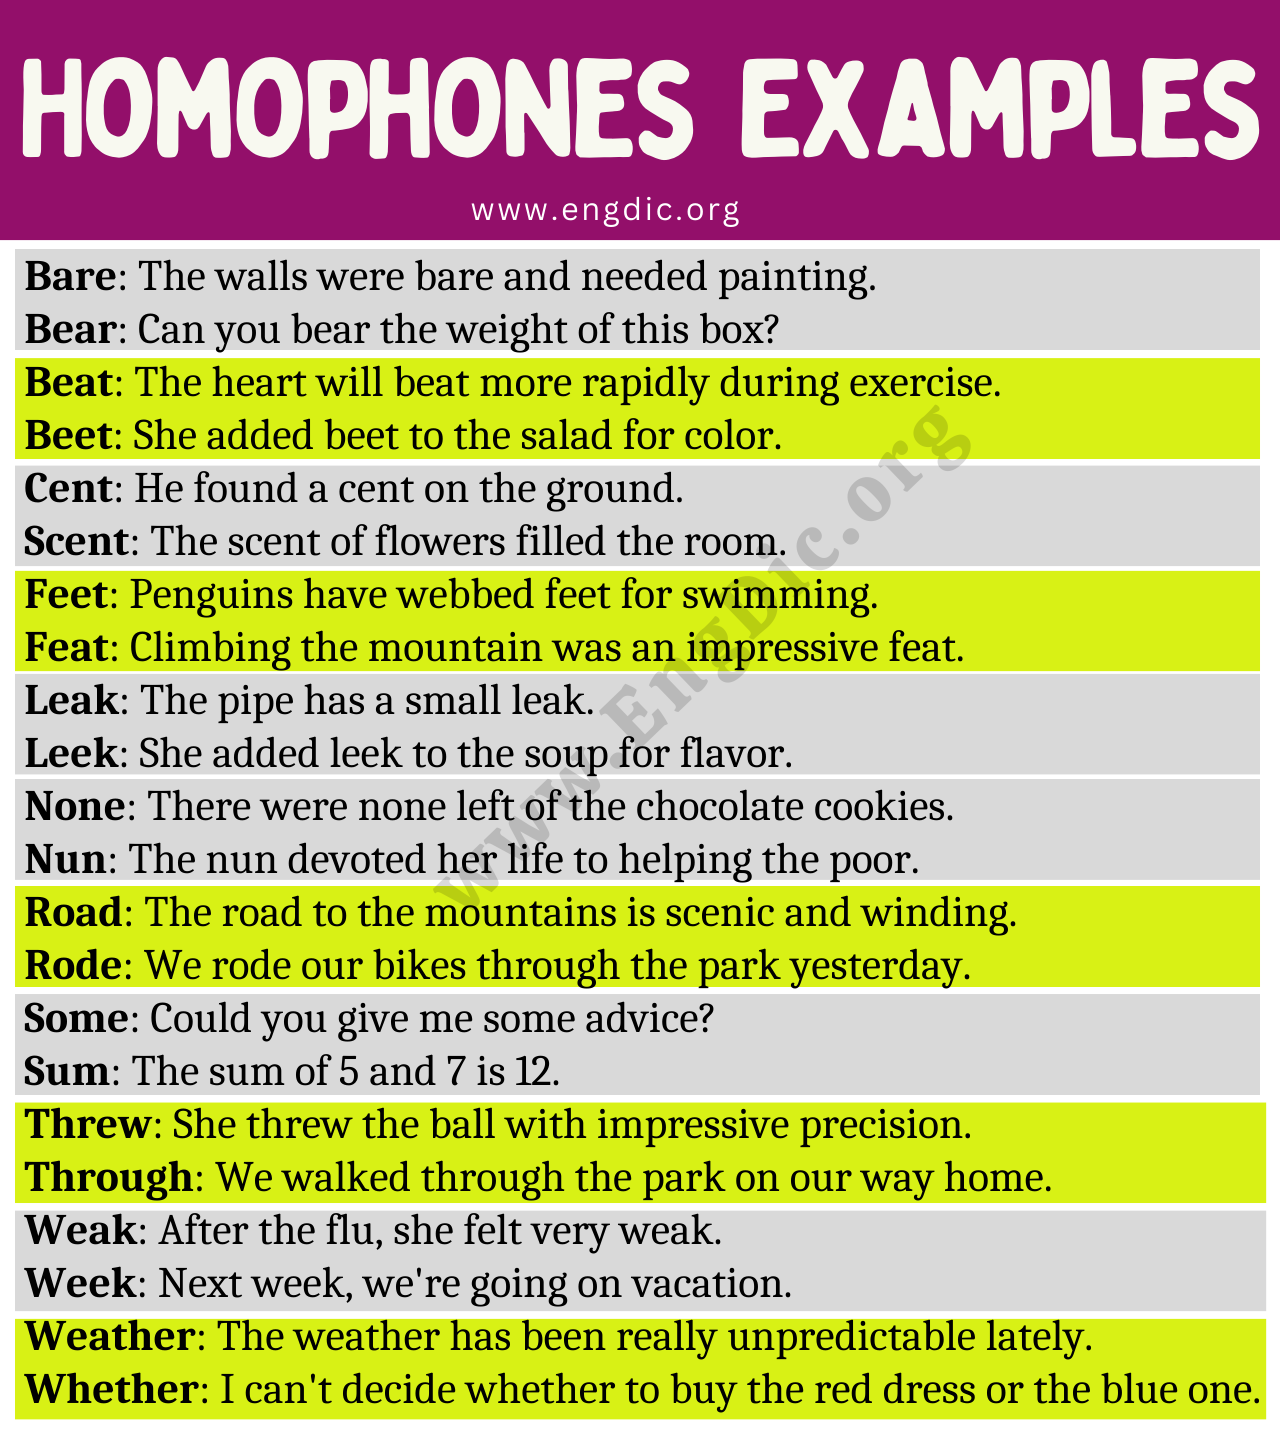 Examples of Homophones in Sentences